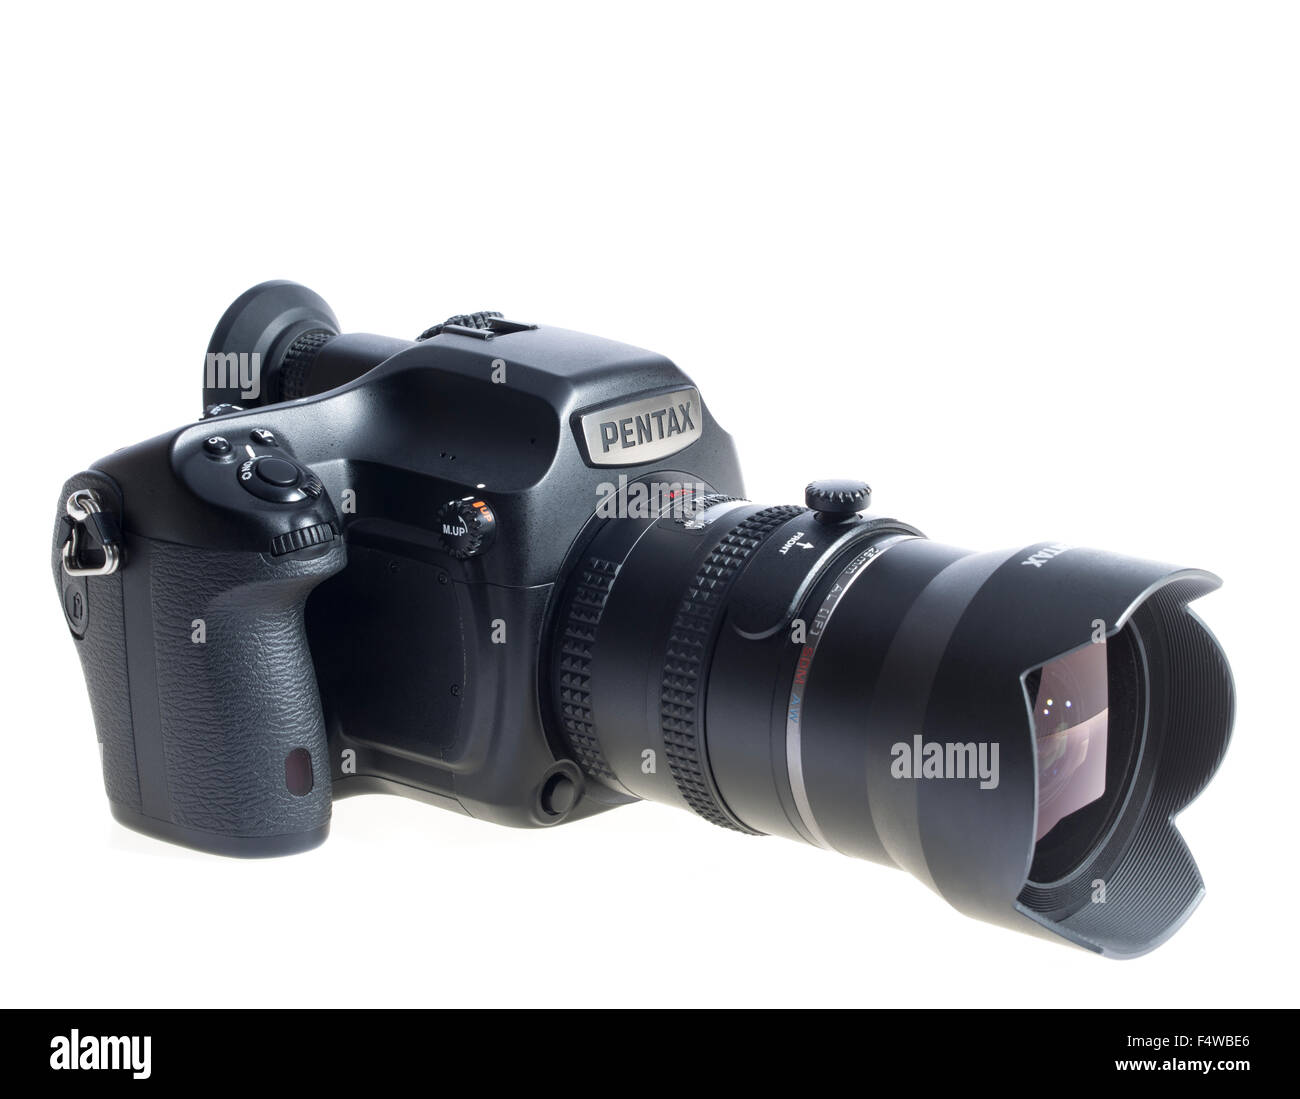 Pentax 645Z Medio Formato fotocamera digitale reflex 53MP con grandangolo da 25 mm. Fotografia professionale sistema. Rilasciato 2014 Foto Stock